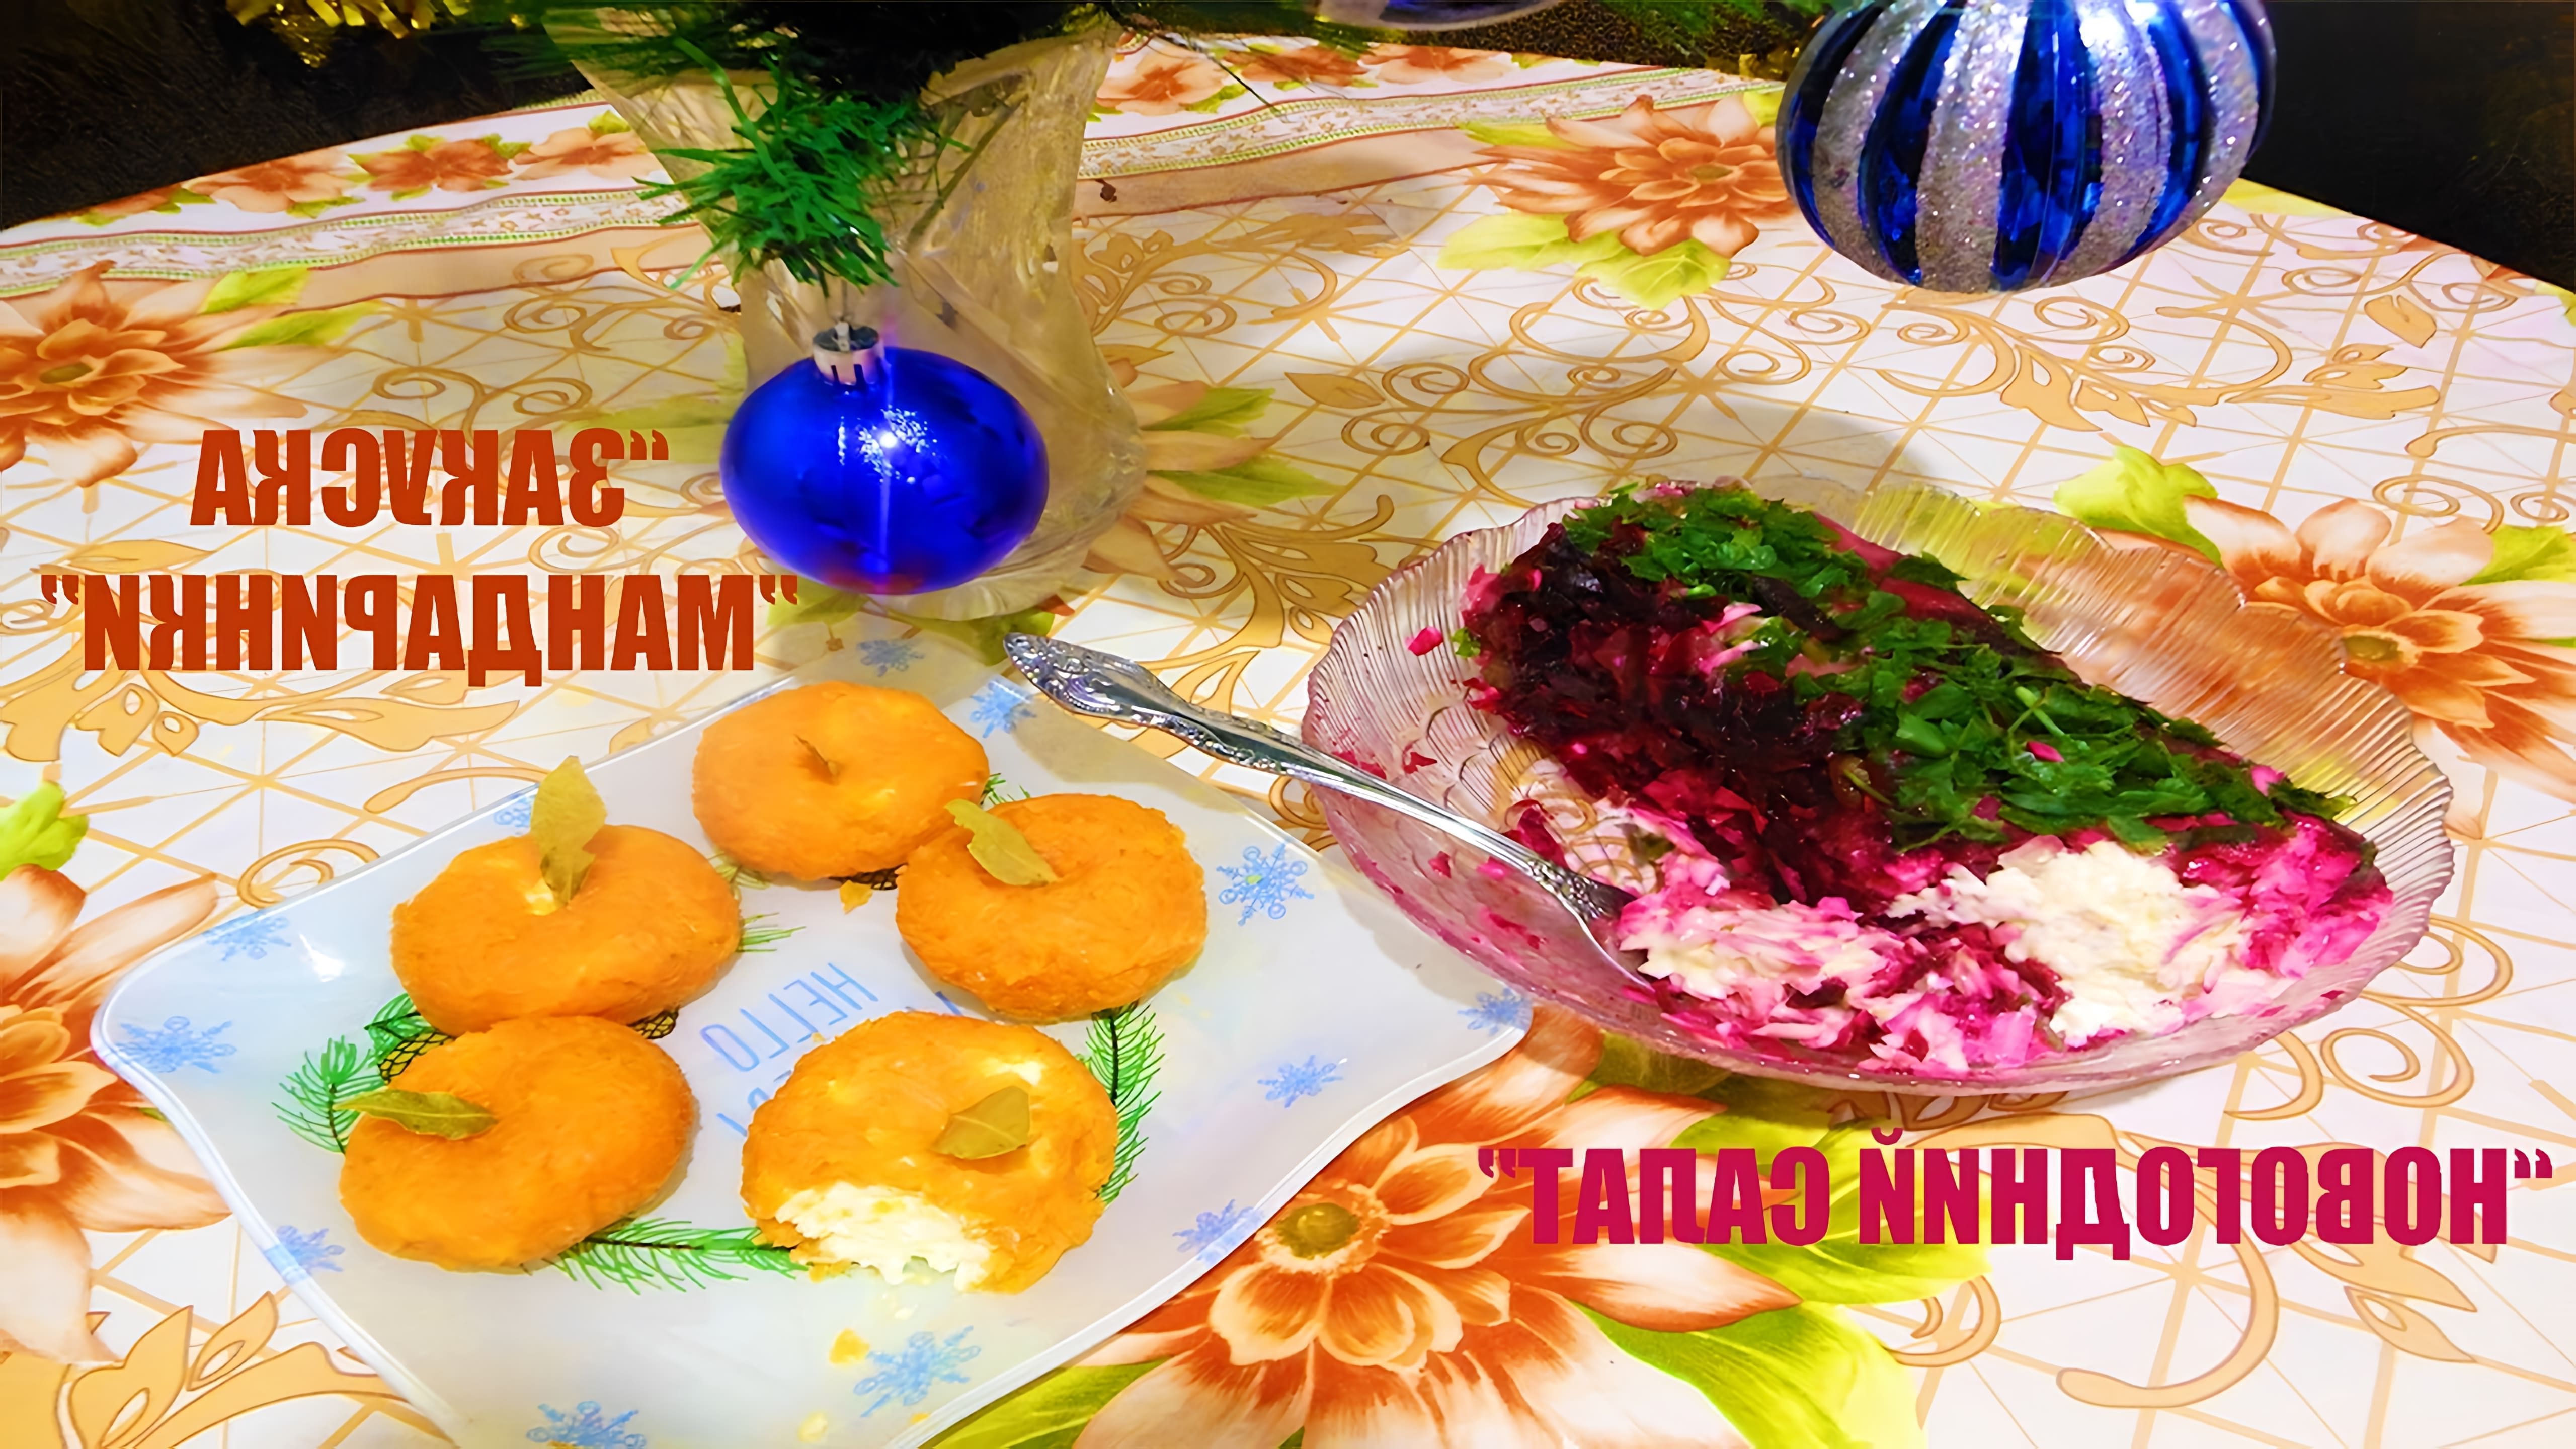 В этом видео показаны два рецепта для новогоднего стола: салат из свеклы, соленых огурцов и копченого сыра, а также закуска "Мандаринки"